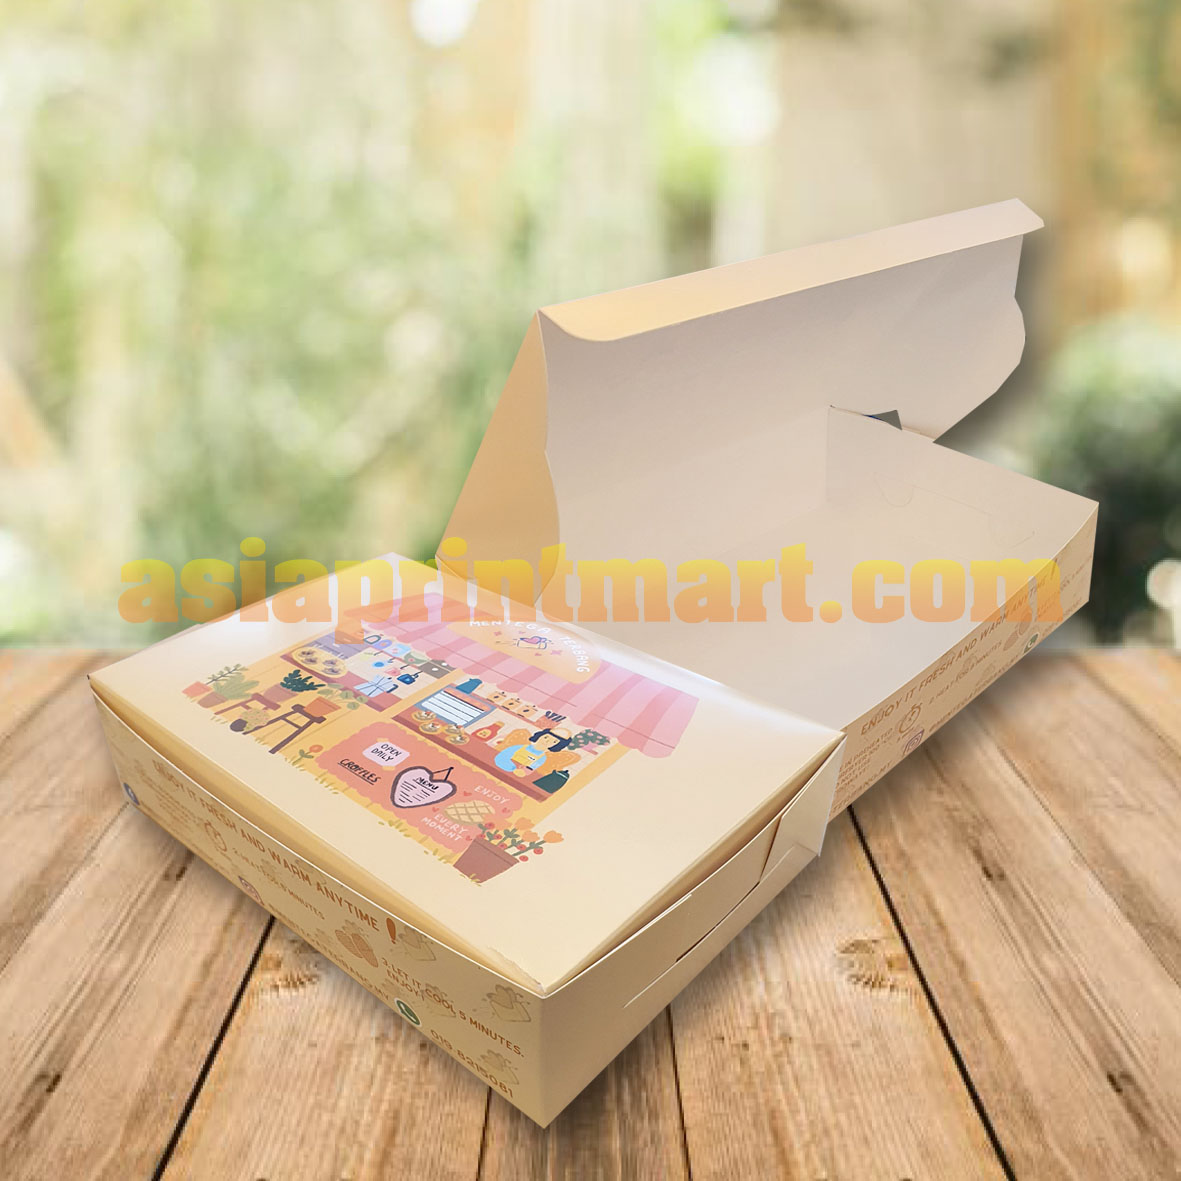 print sample box, print cookies box, cetak murah kotak raya, cetak kotak biskut, cetak ketak kek, print cheap cake box,food box printer,